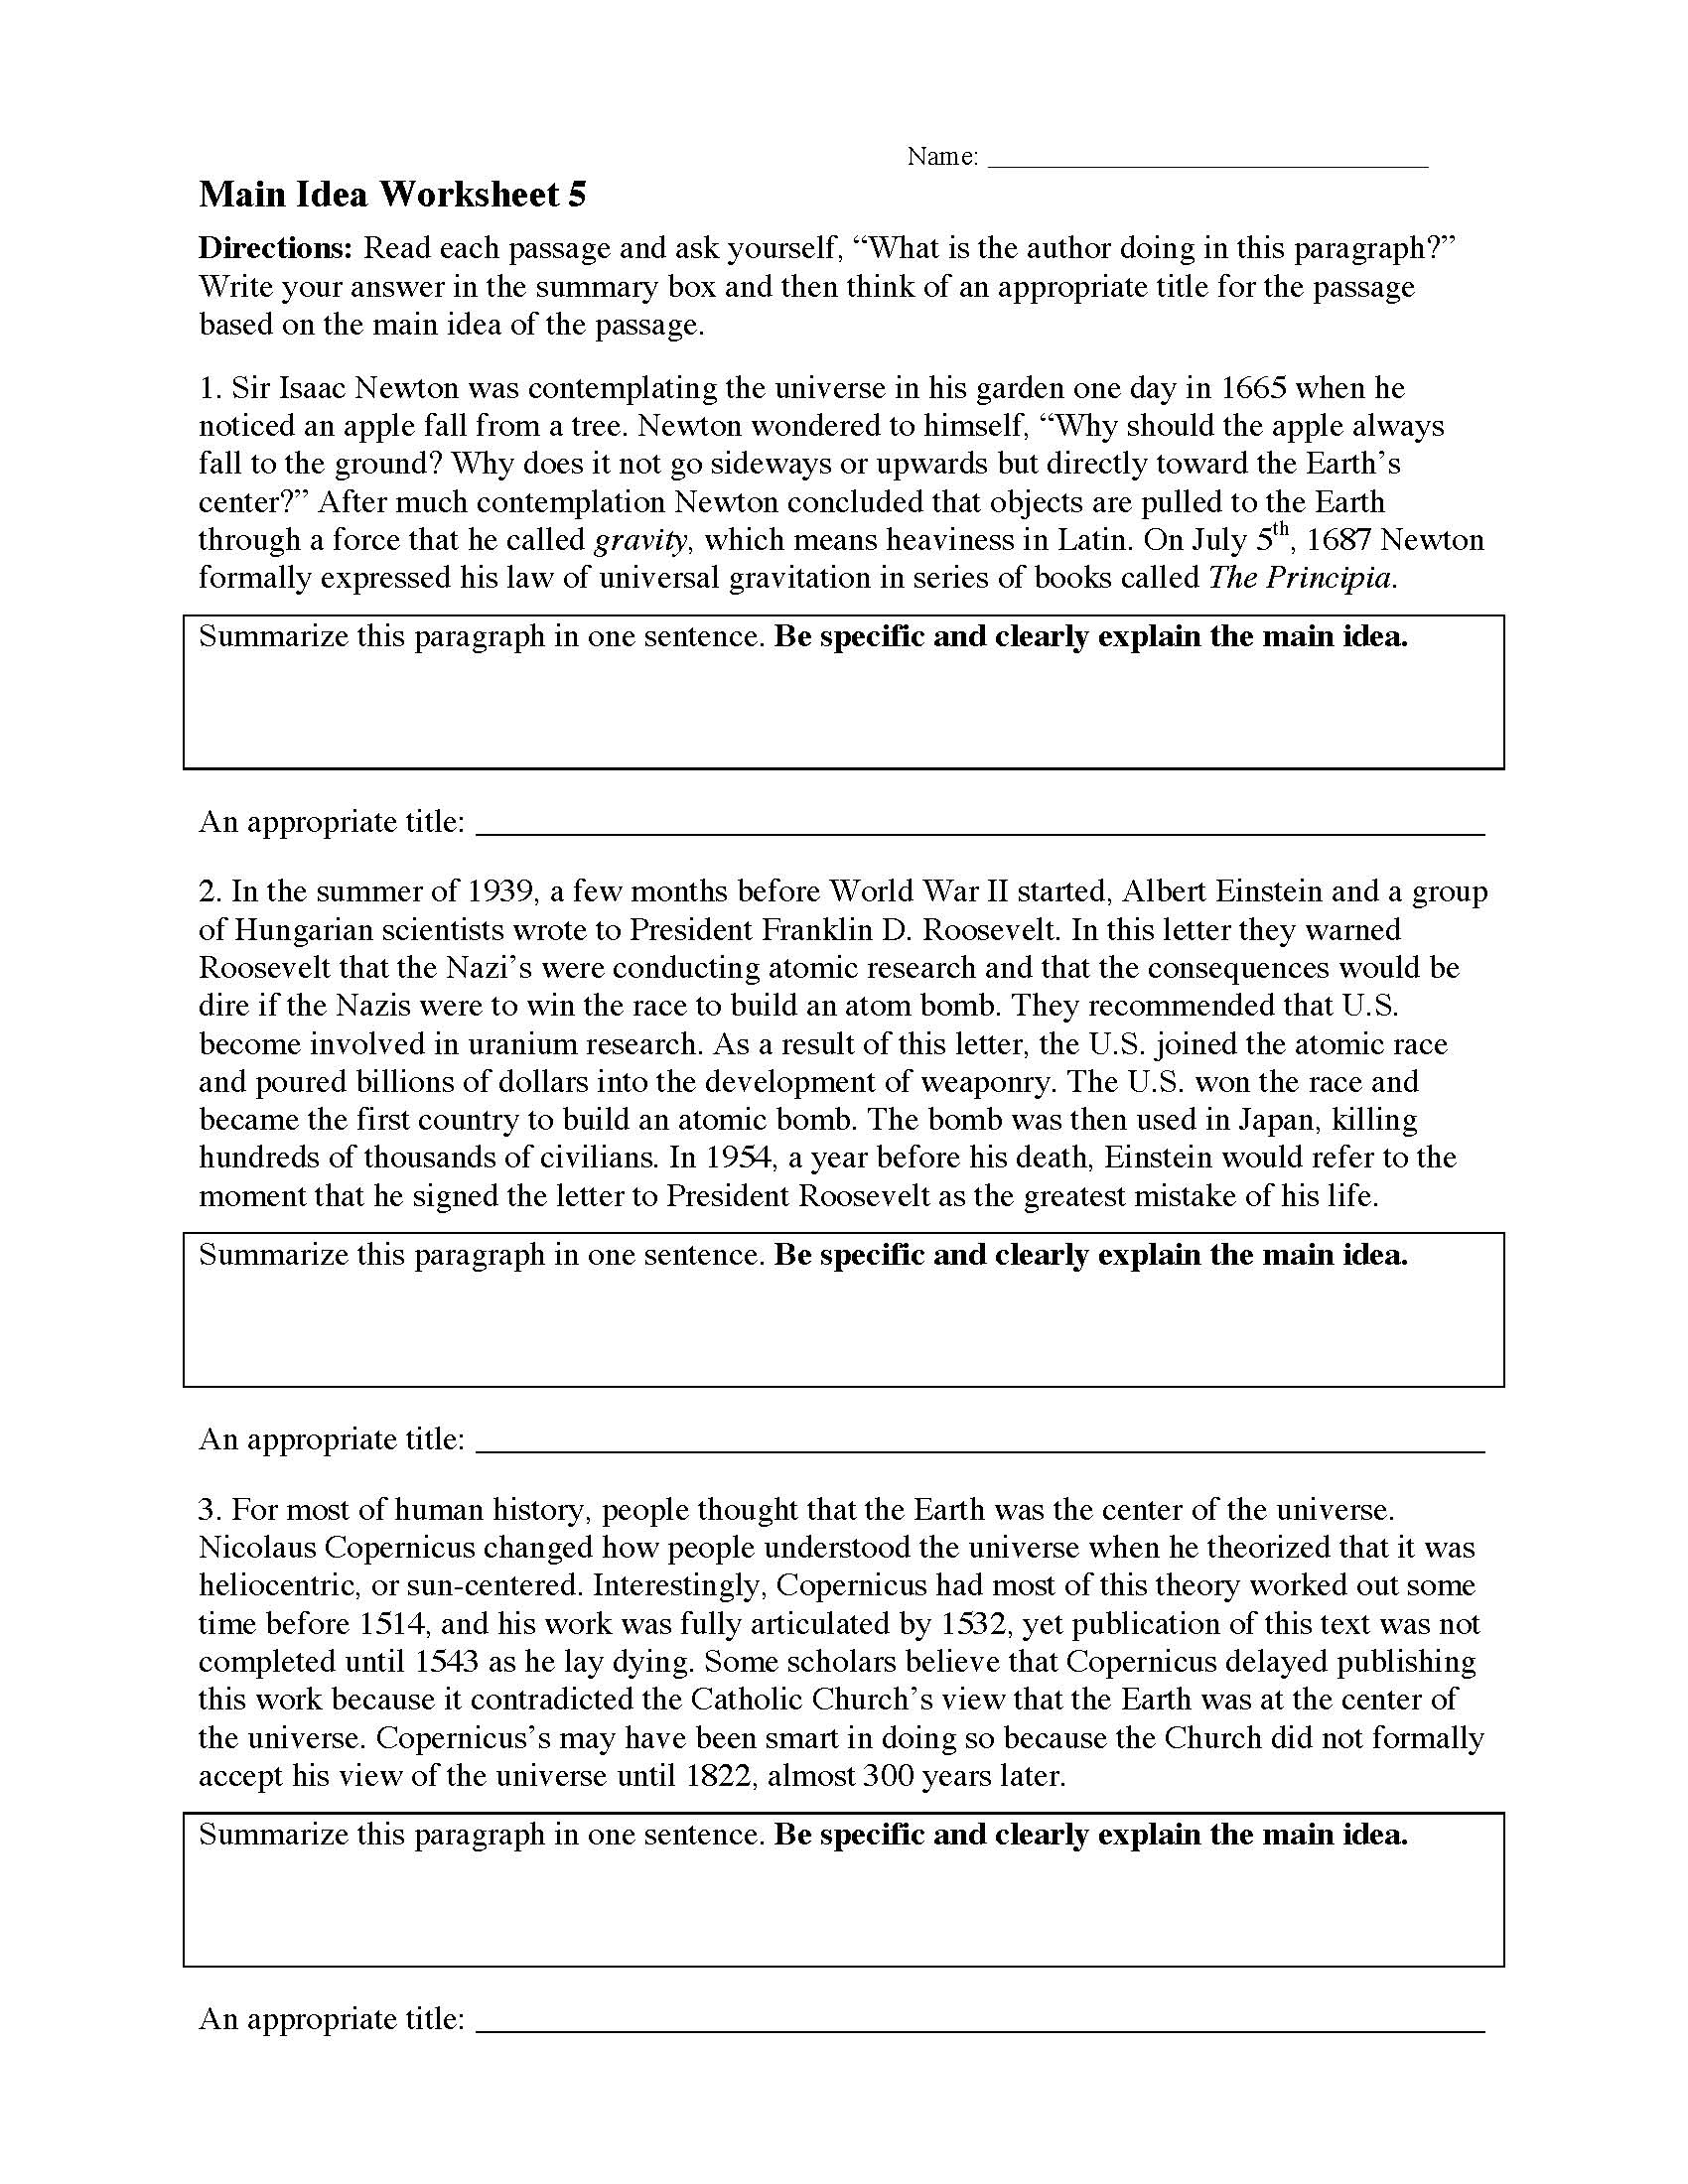 Main Idea Worksheets  Ereading Worksheets Intended For Main Idea Worksheet 4